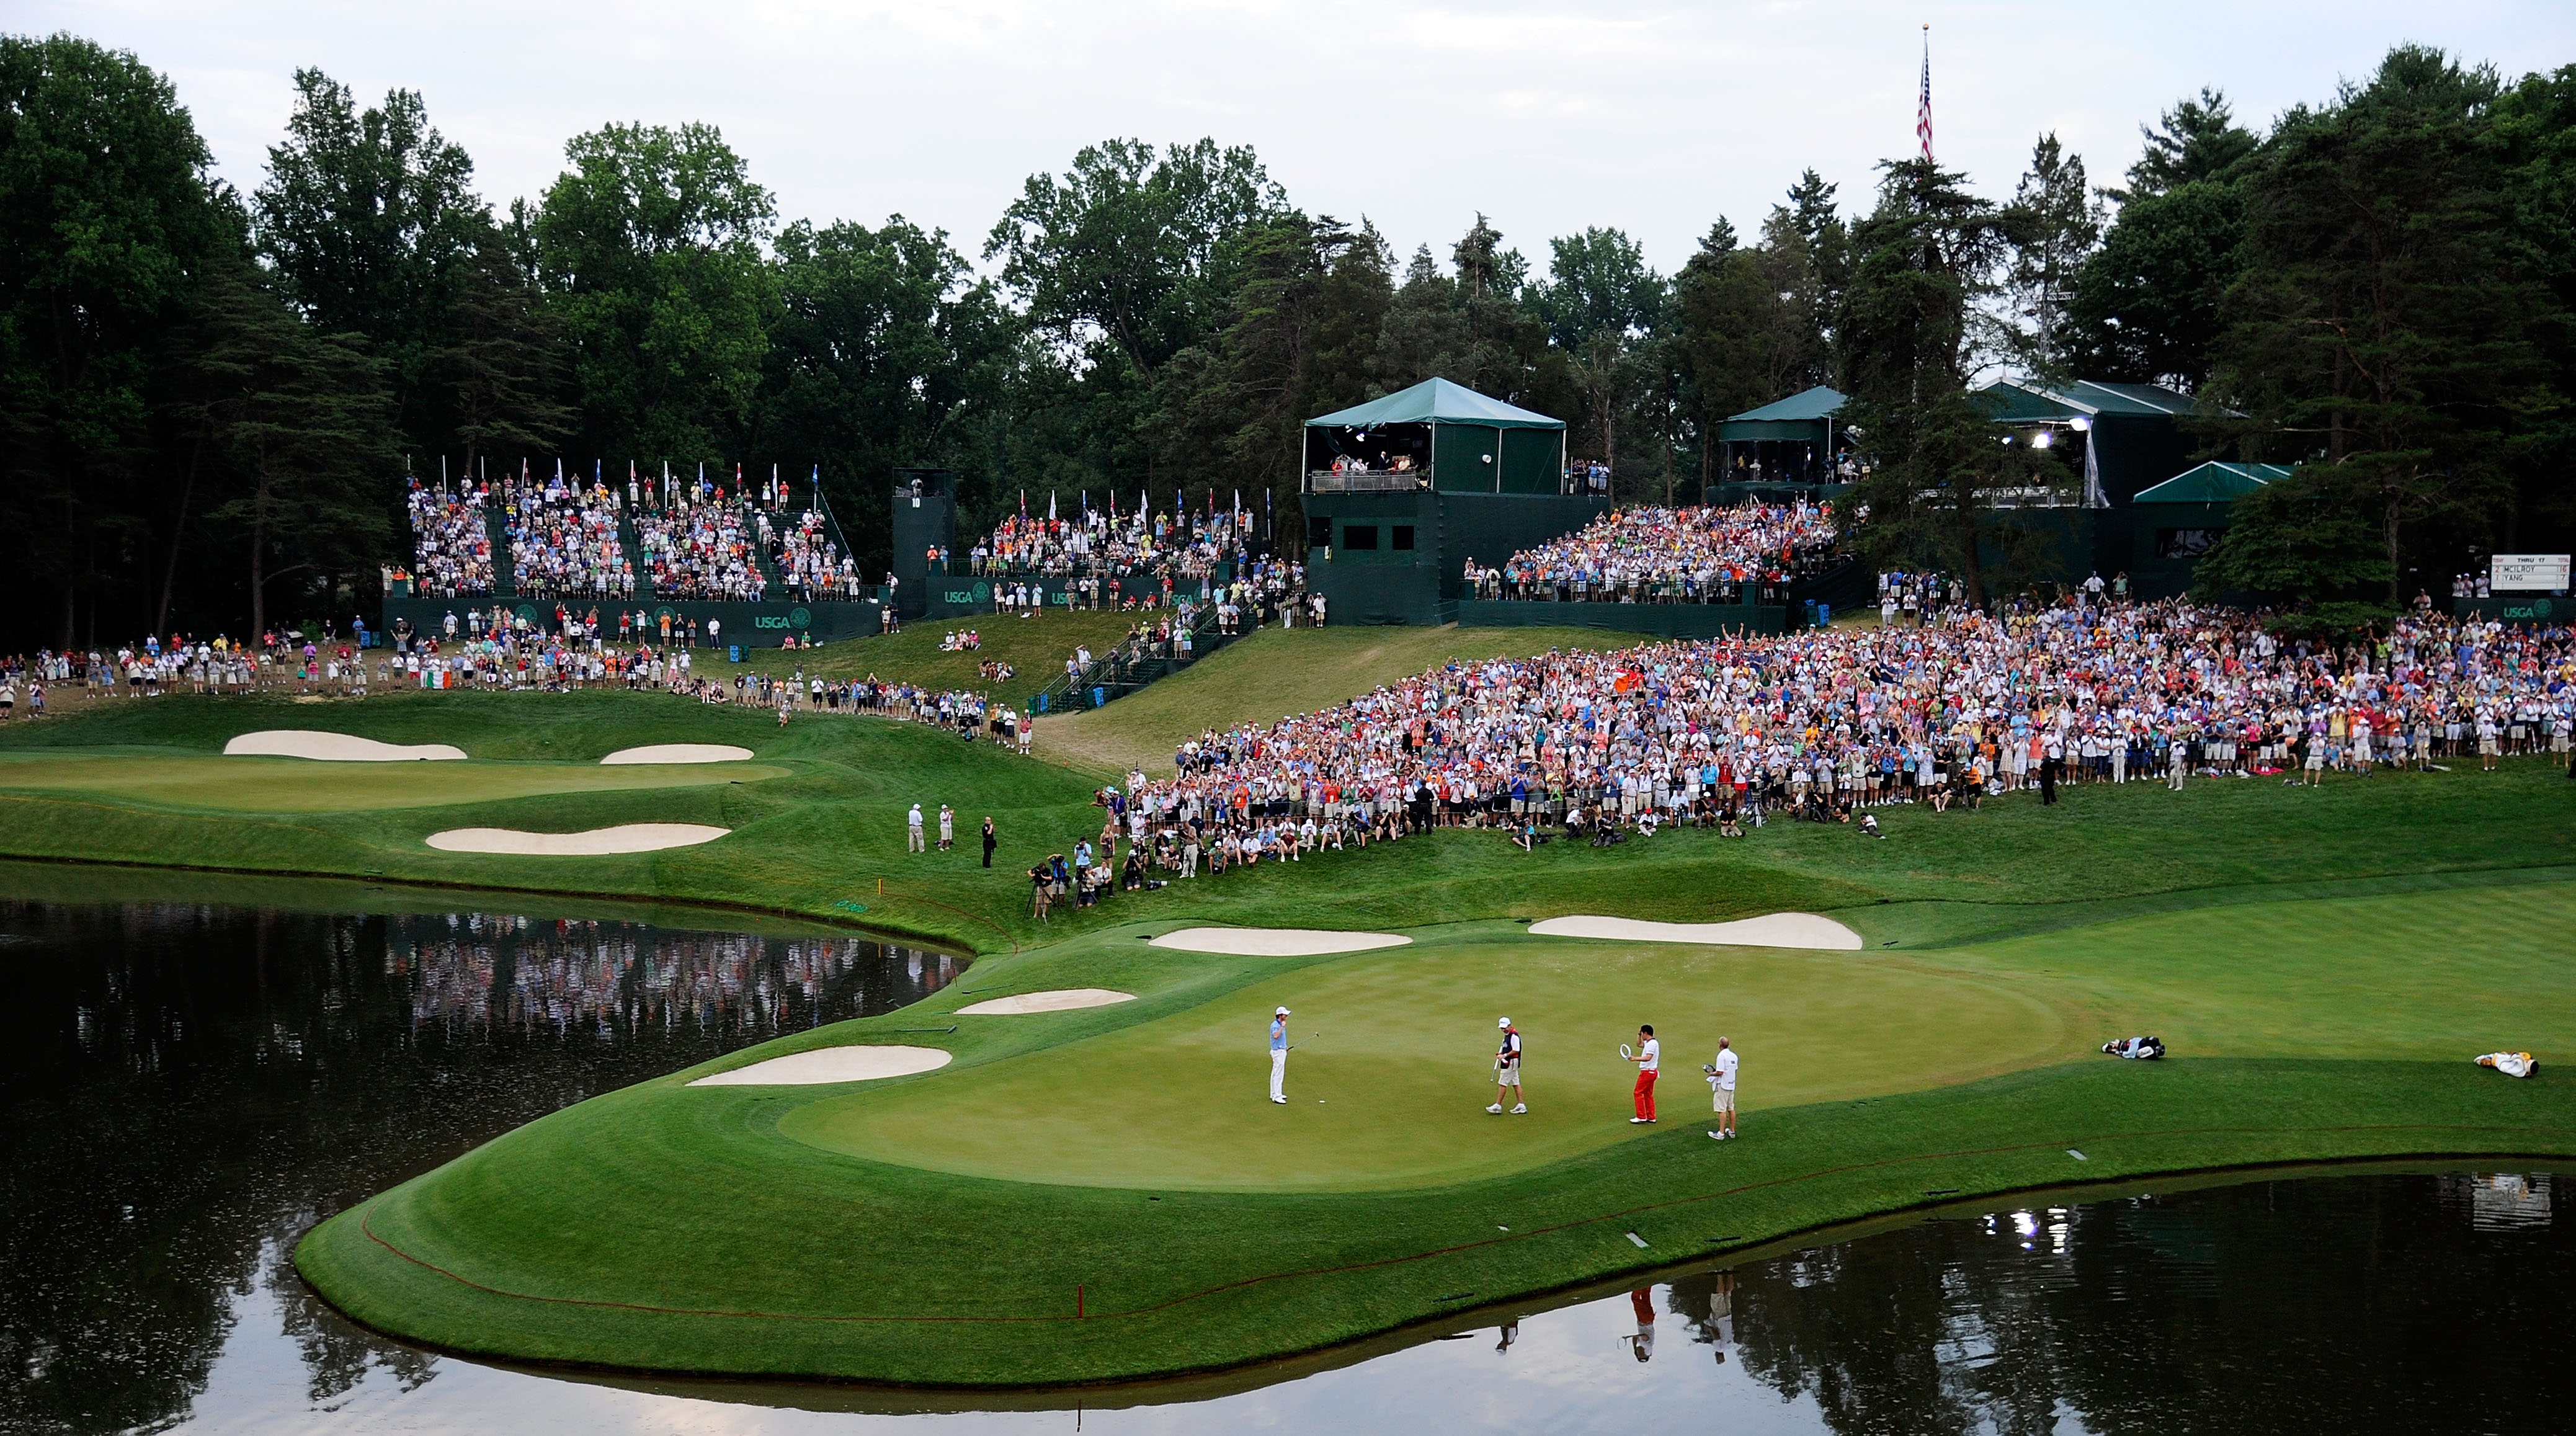 10.000 golfer tranh đấu quyết liệt nhằm giành tấm vé tham dự U.S Open